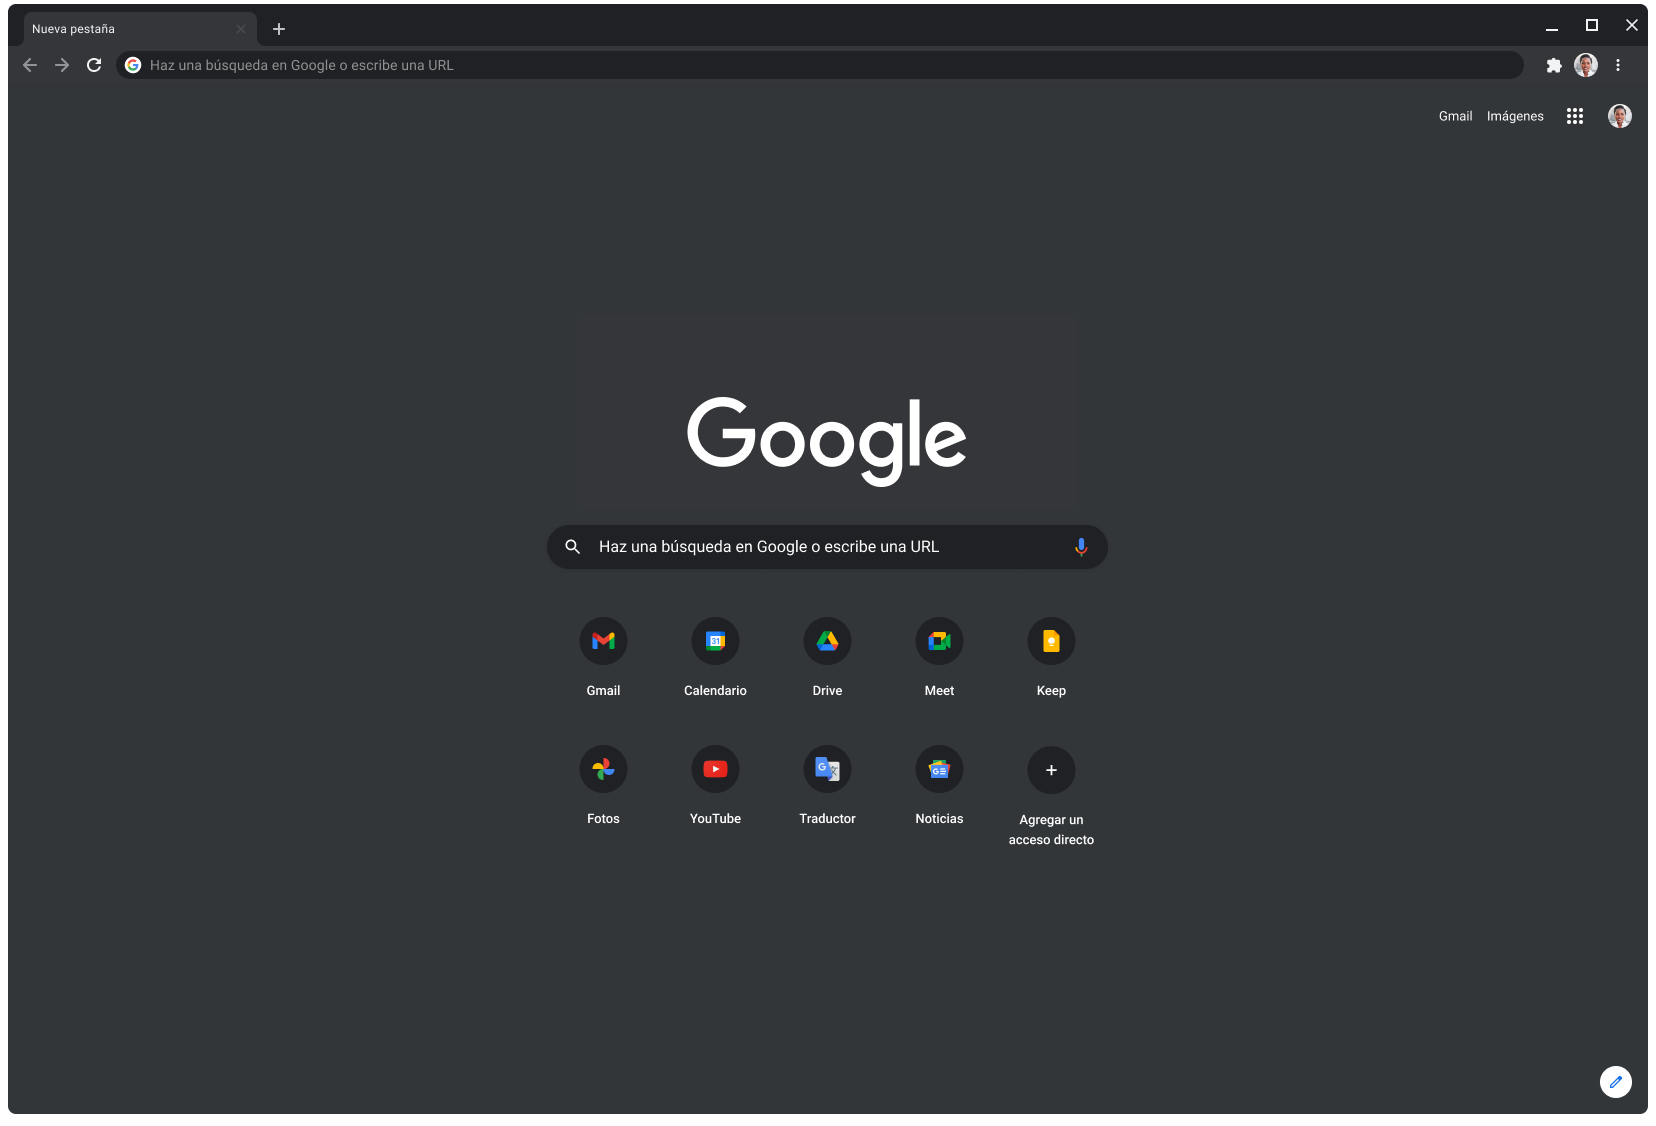 Ventana del navegador Chrome en modo oscuro que muestra Google.com.